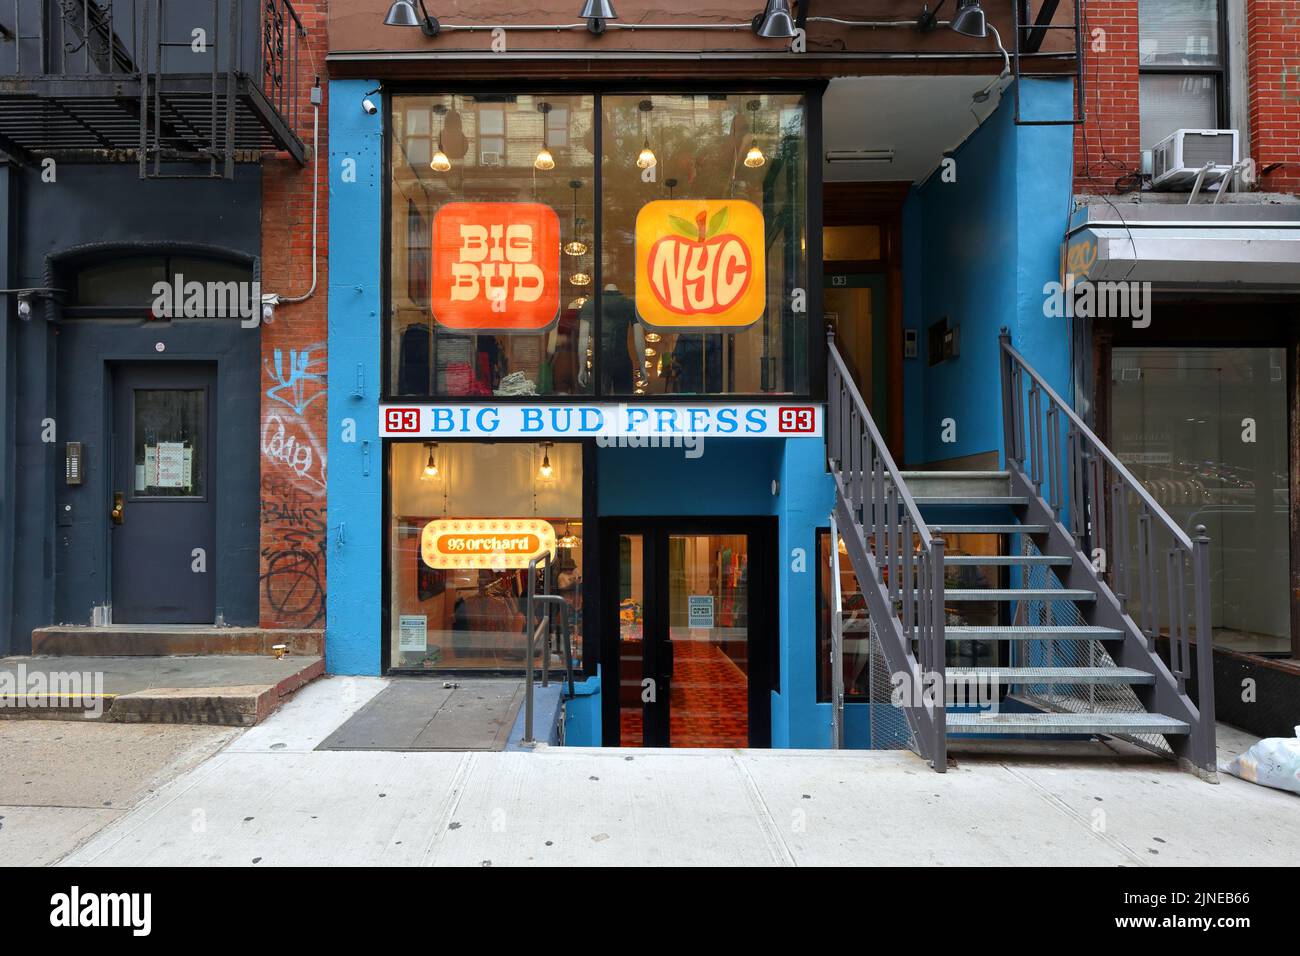 Big Bud Press, 93 Orchard St. New York, NY. Façade extérieure d'un magasin de vêtements neutre dans le quartier Lower East Side de Manhattan. Banque D'Images